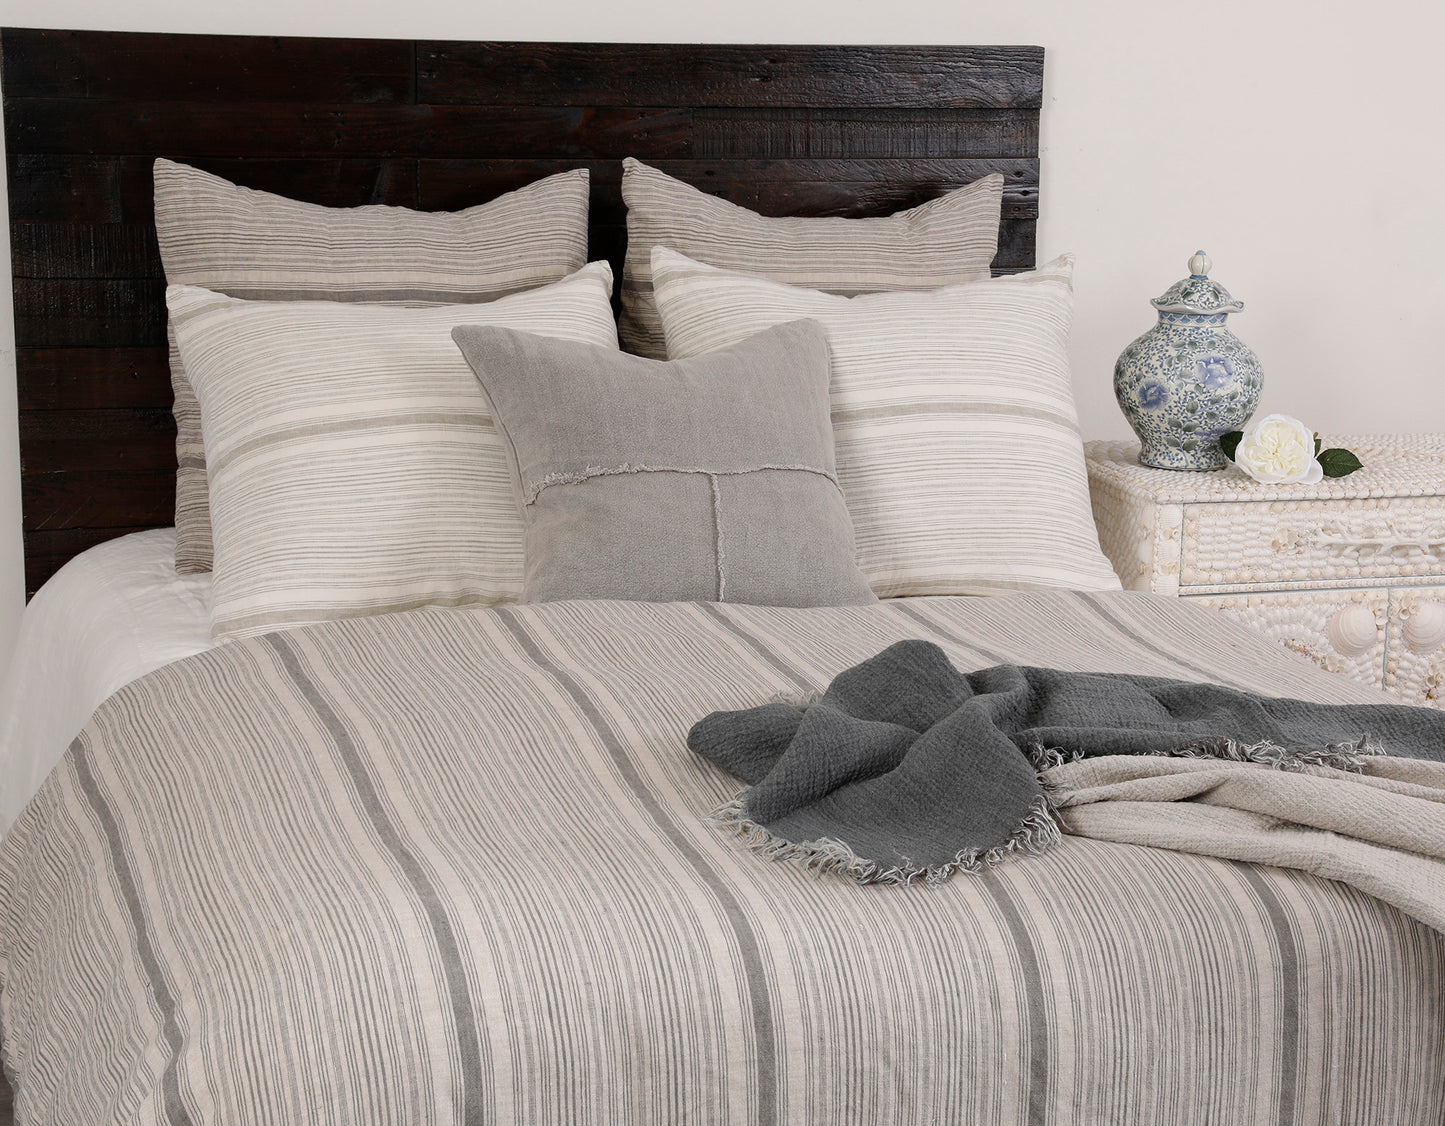 Uma Duvet Cover for bedding and sheets